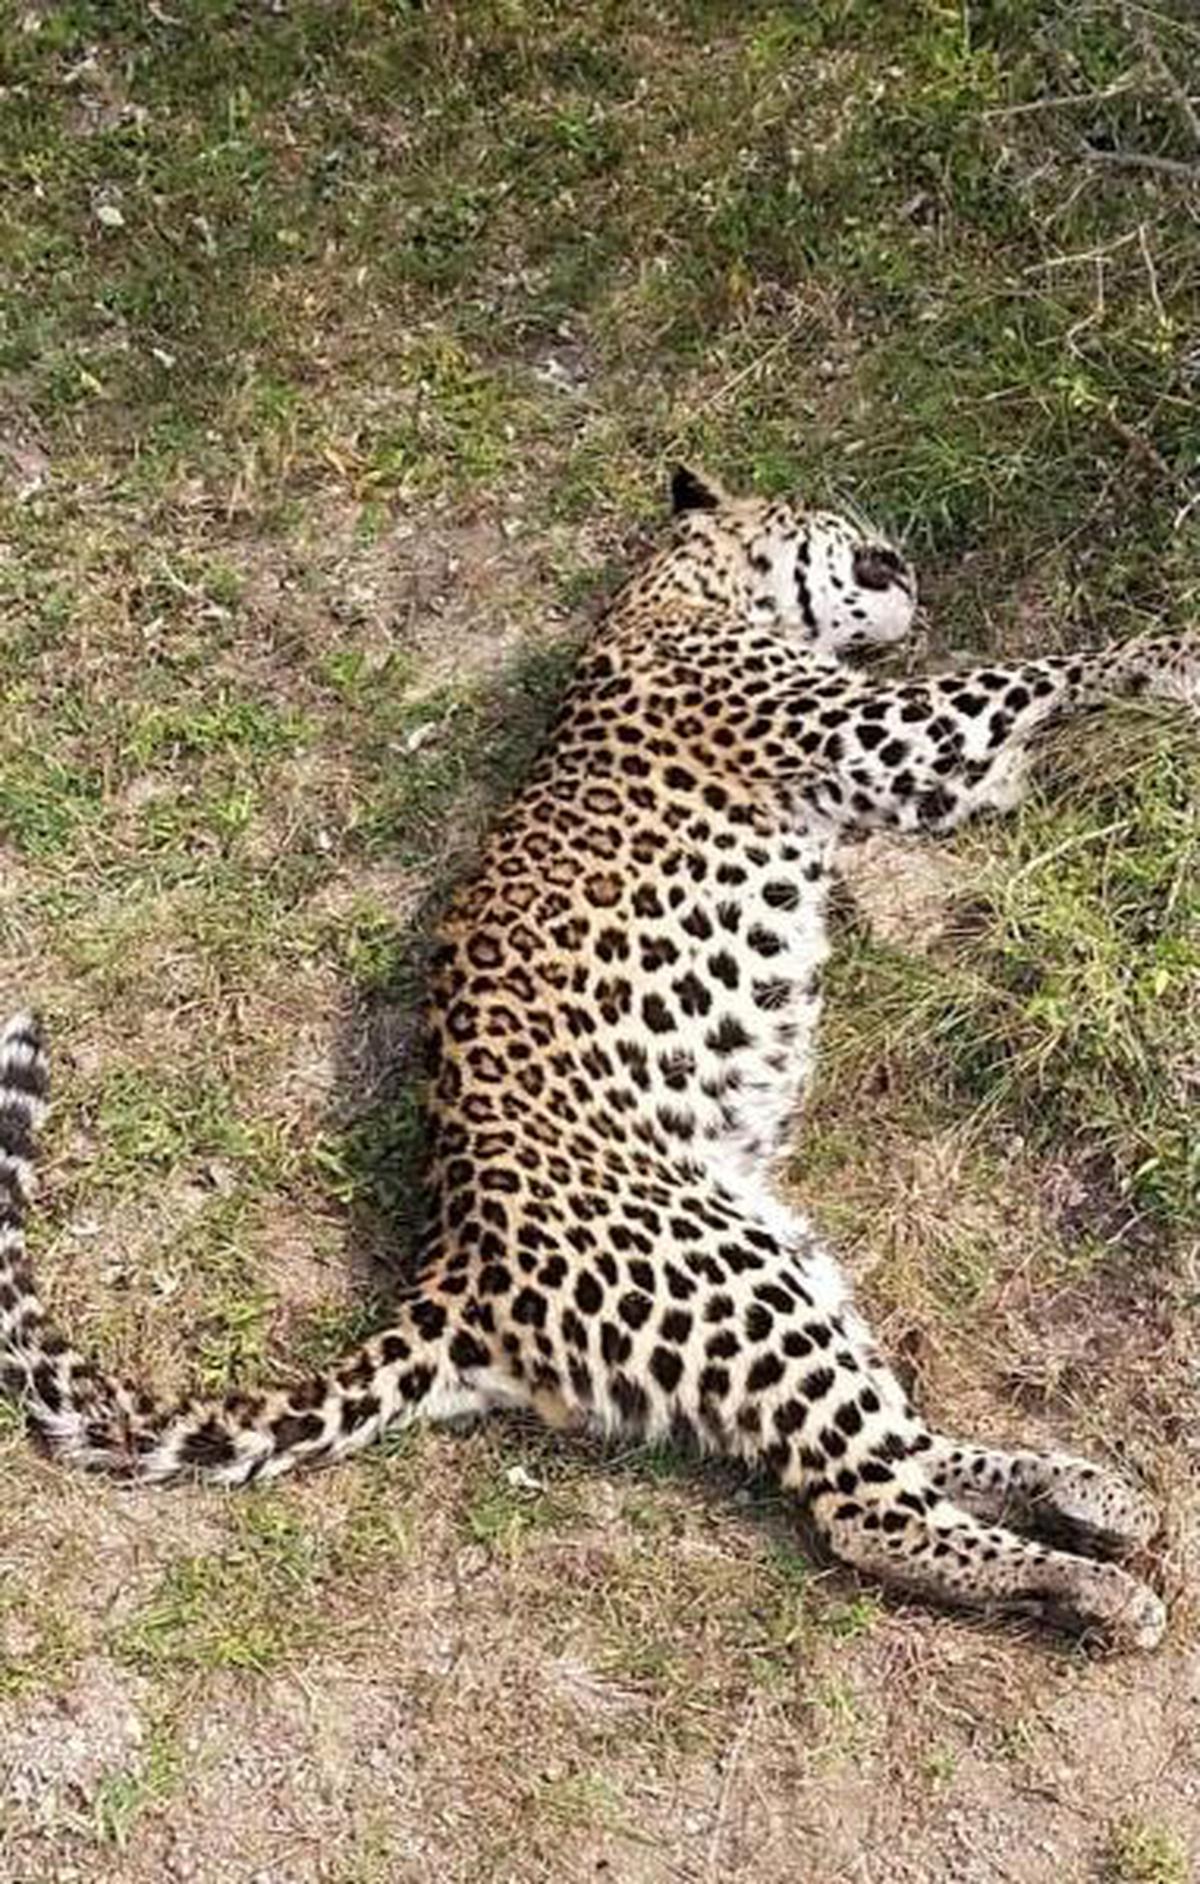 Leopard death near Kosigi being probed: Kurnool DFO